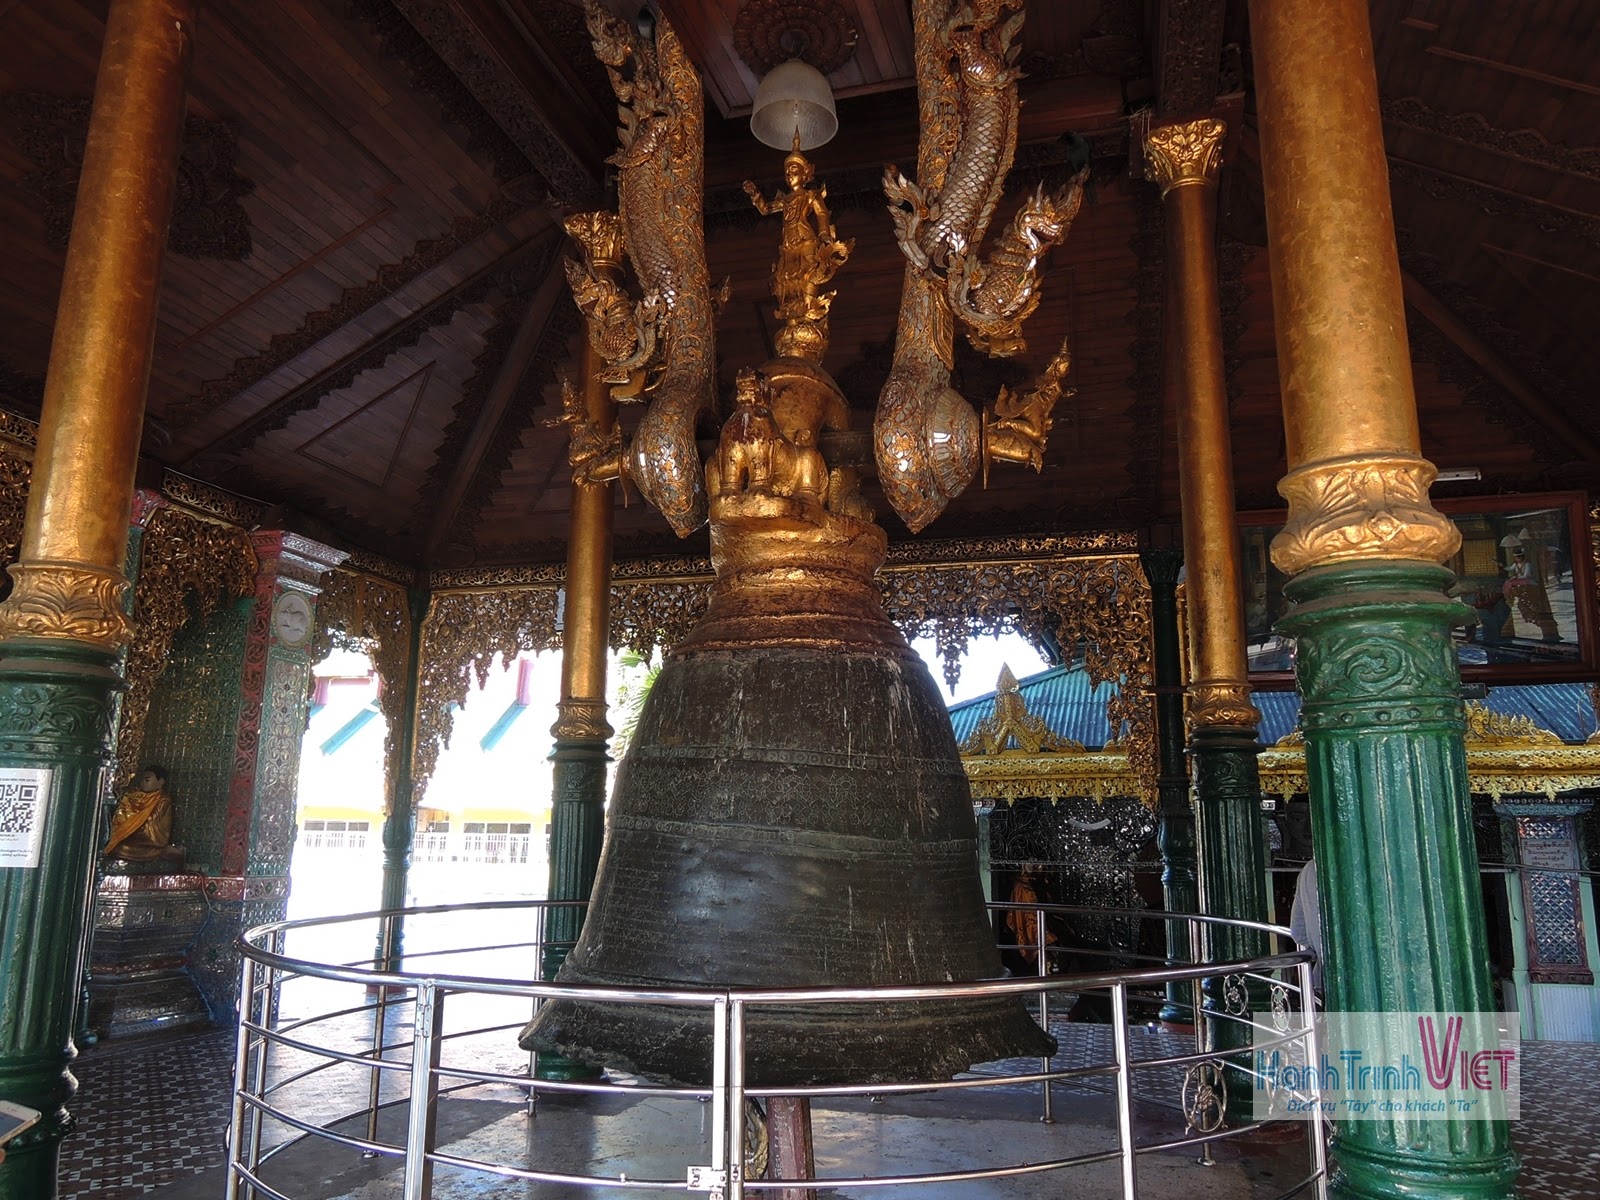 Tham quan chùa Swedagon o Yangon